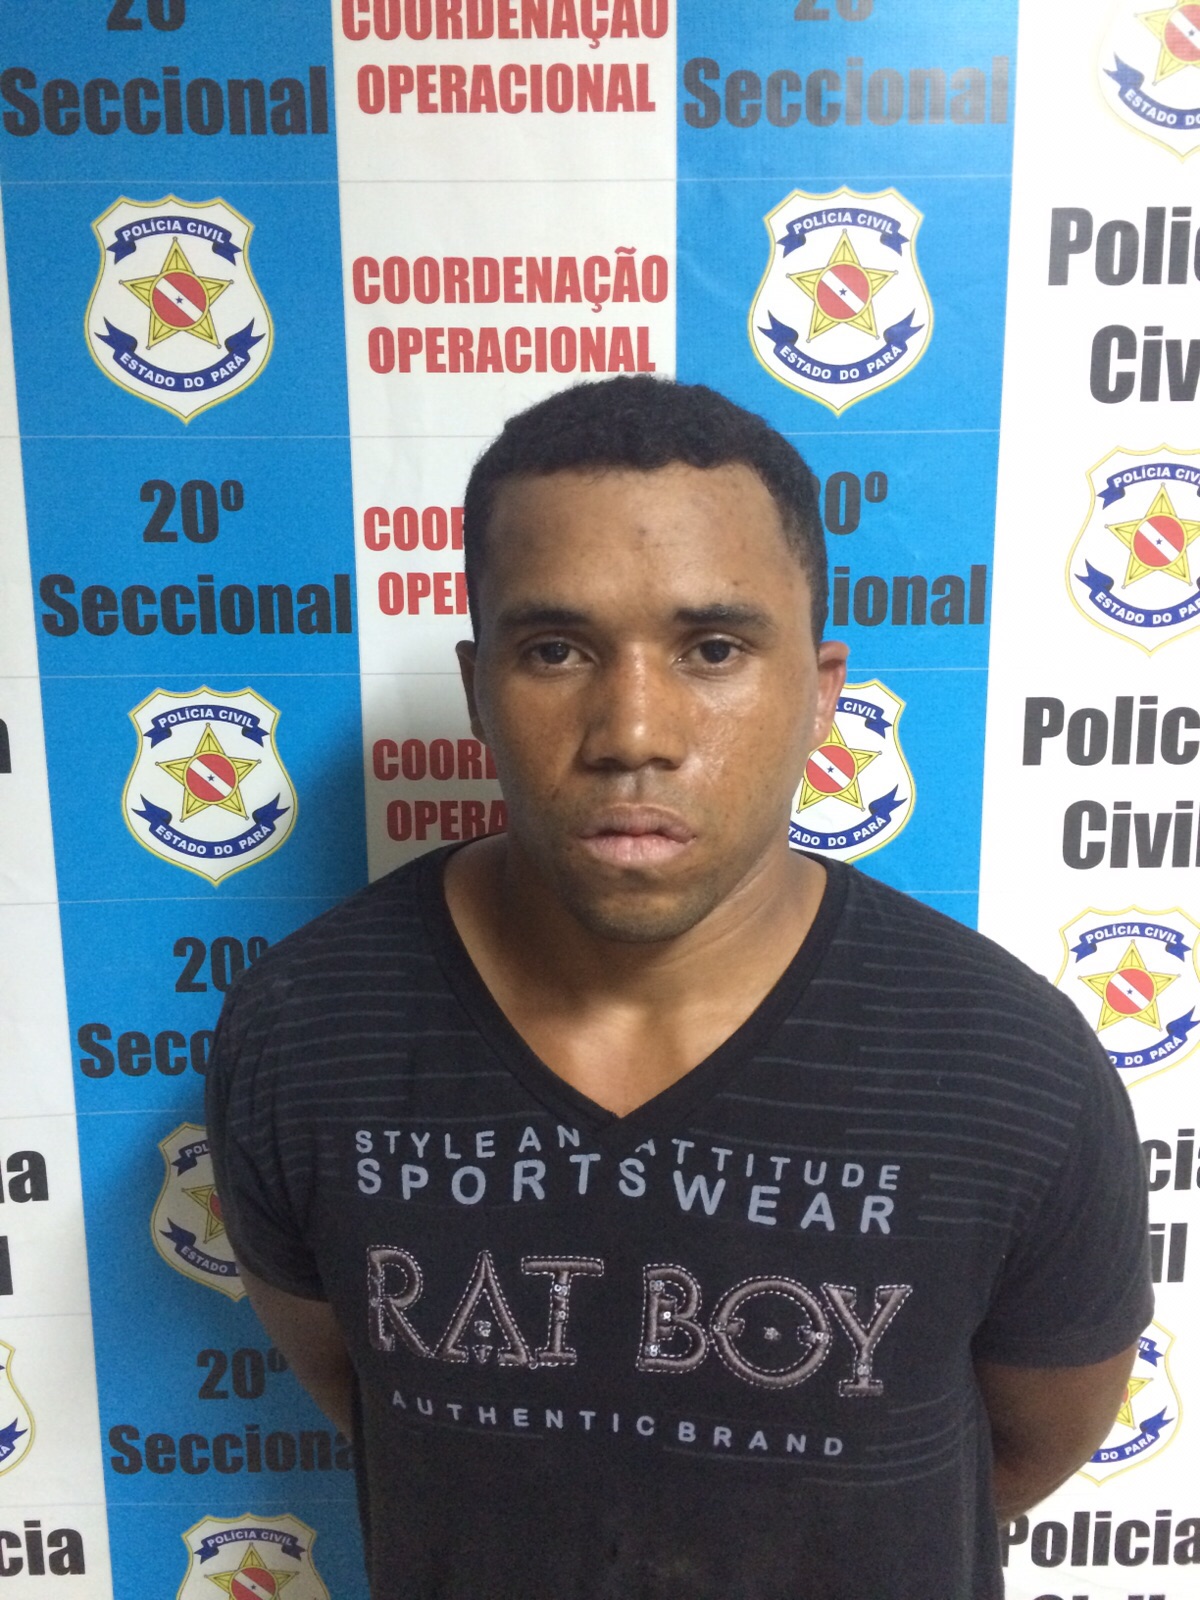  Parauapebas : Policia Civil prende estrupador do retrato falado